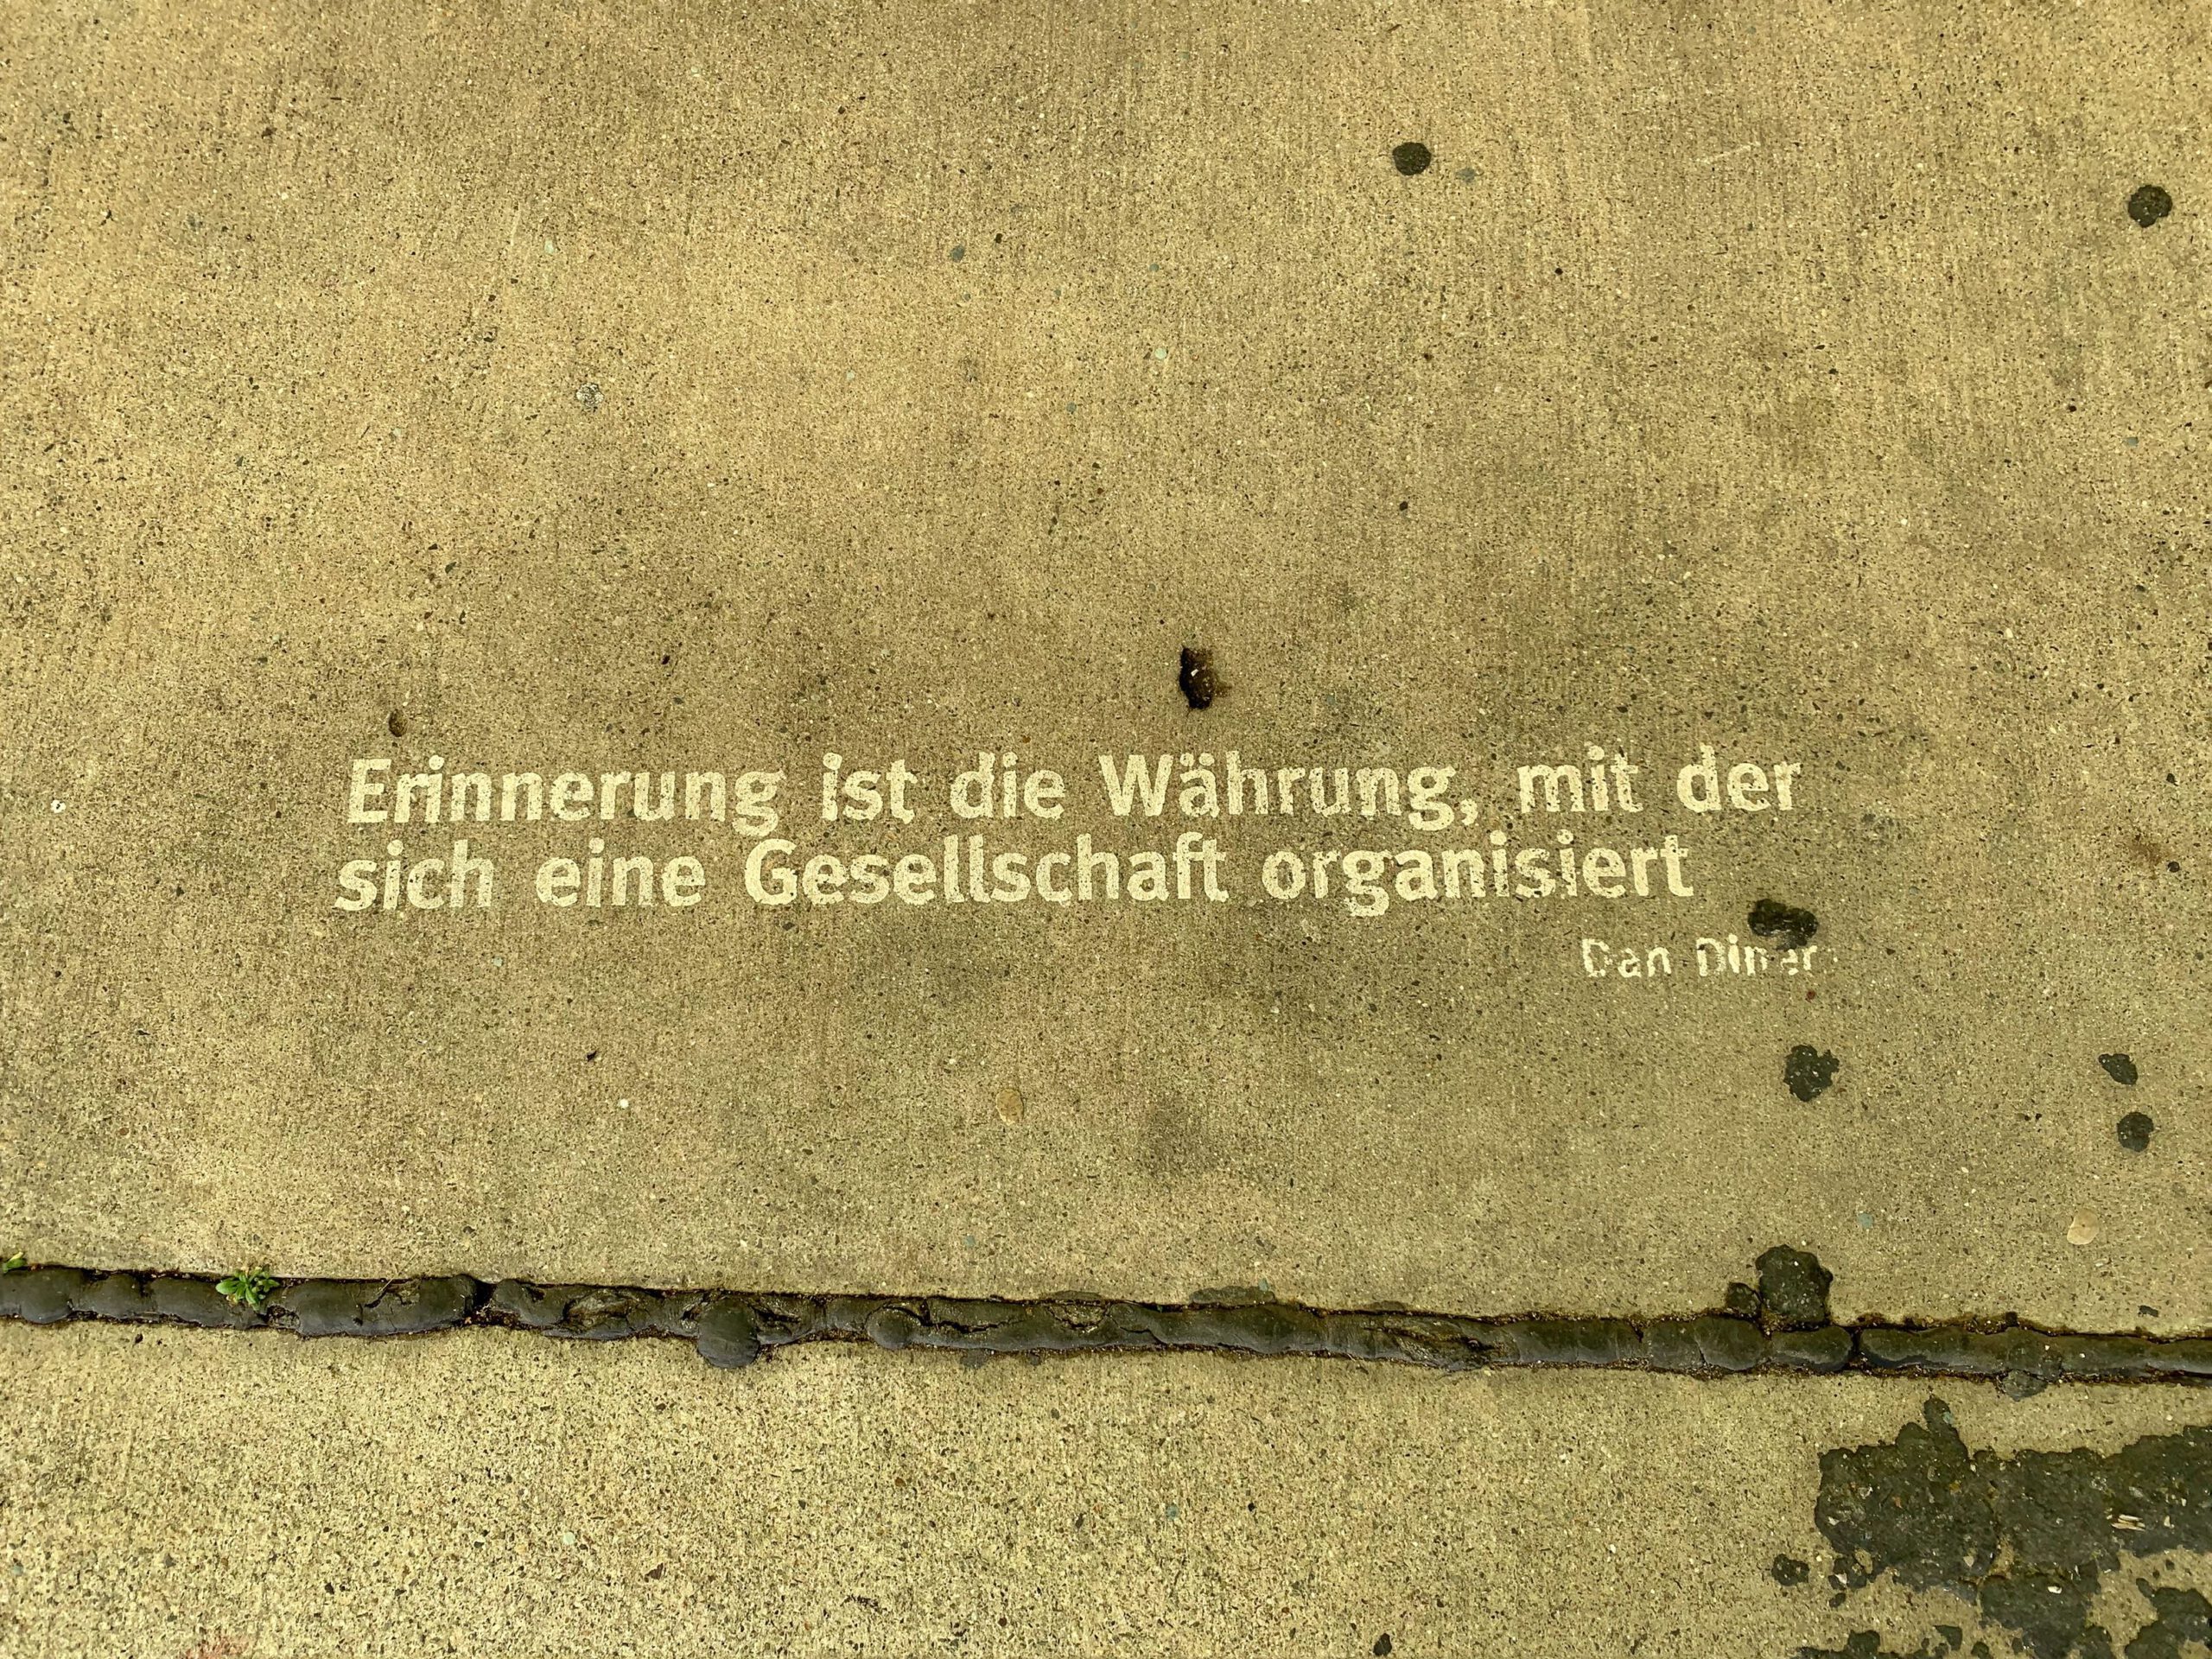 Zitat in Marienborn in der Grenzgedenkstätte